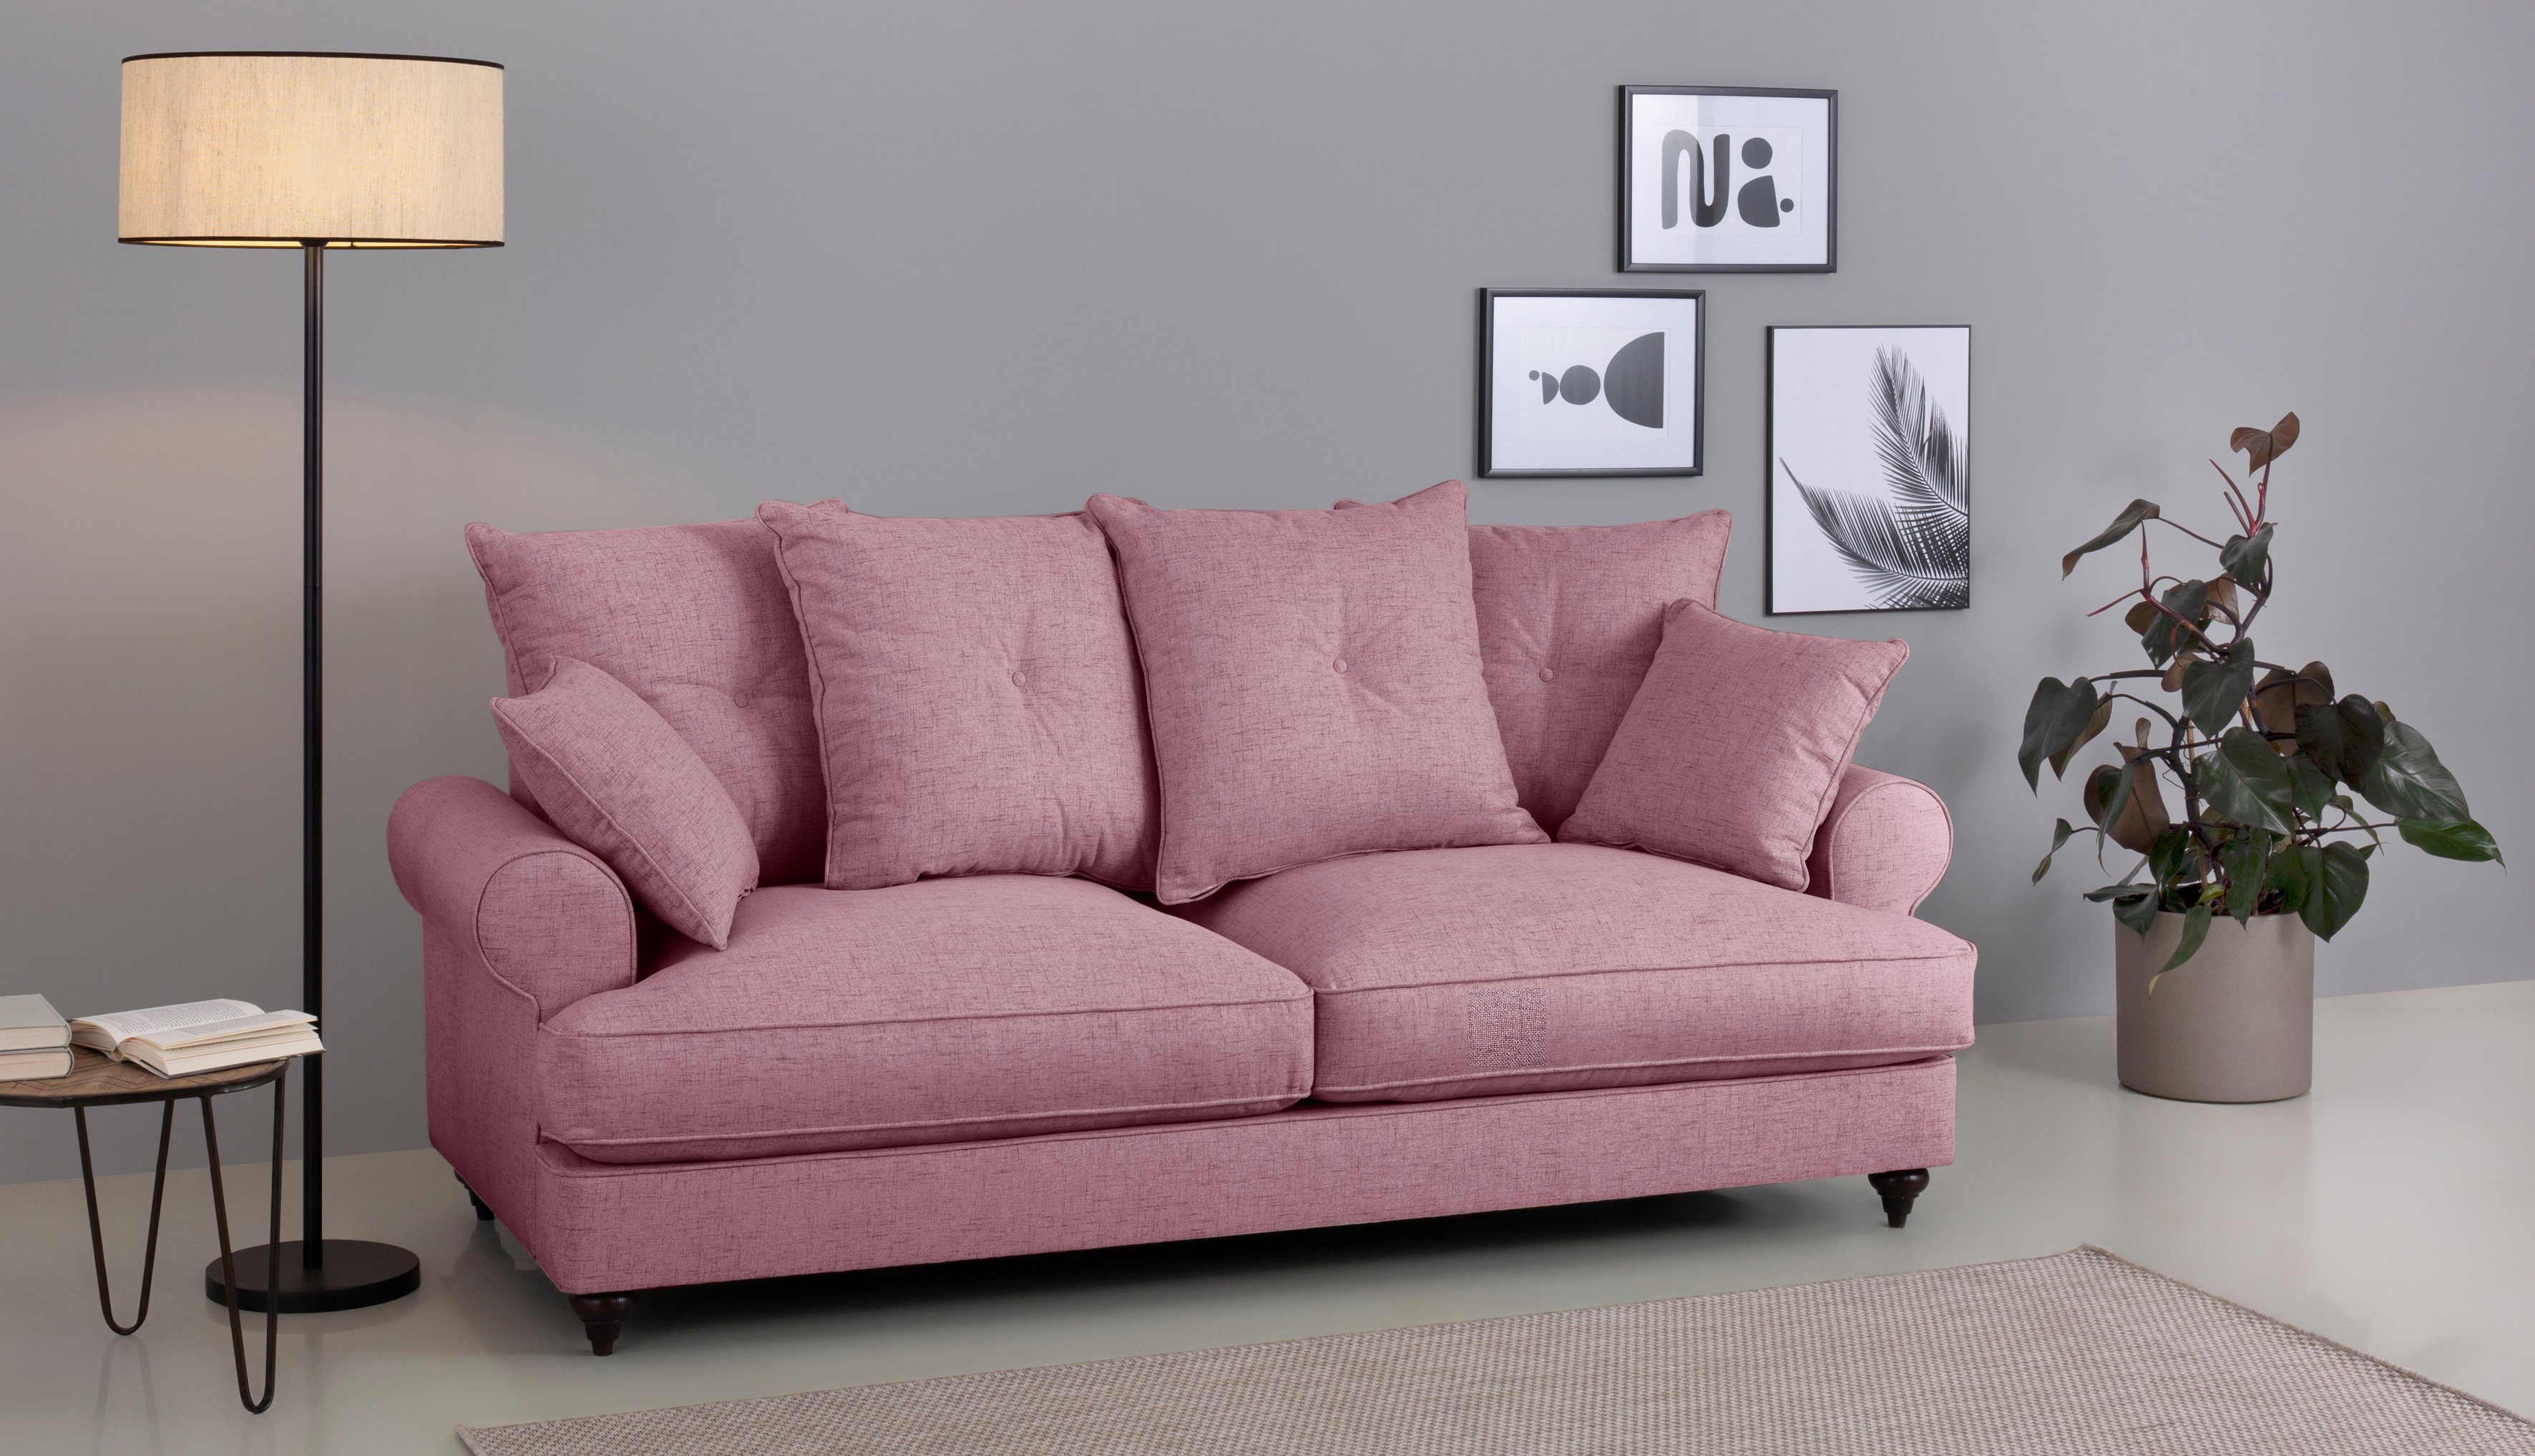 Home affaire 3-Sitzer Bloomer, mit hochwertigem Kaltschaum, in verschiedenen Farben erhältlich violet